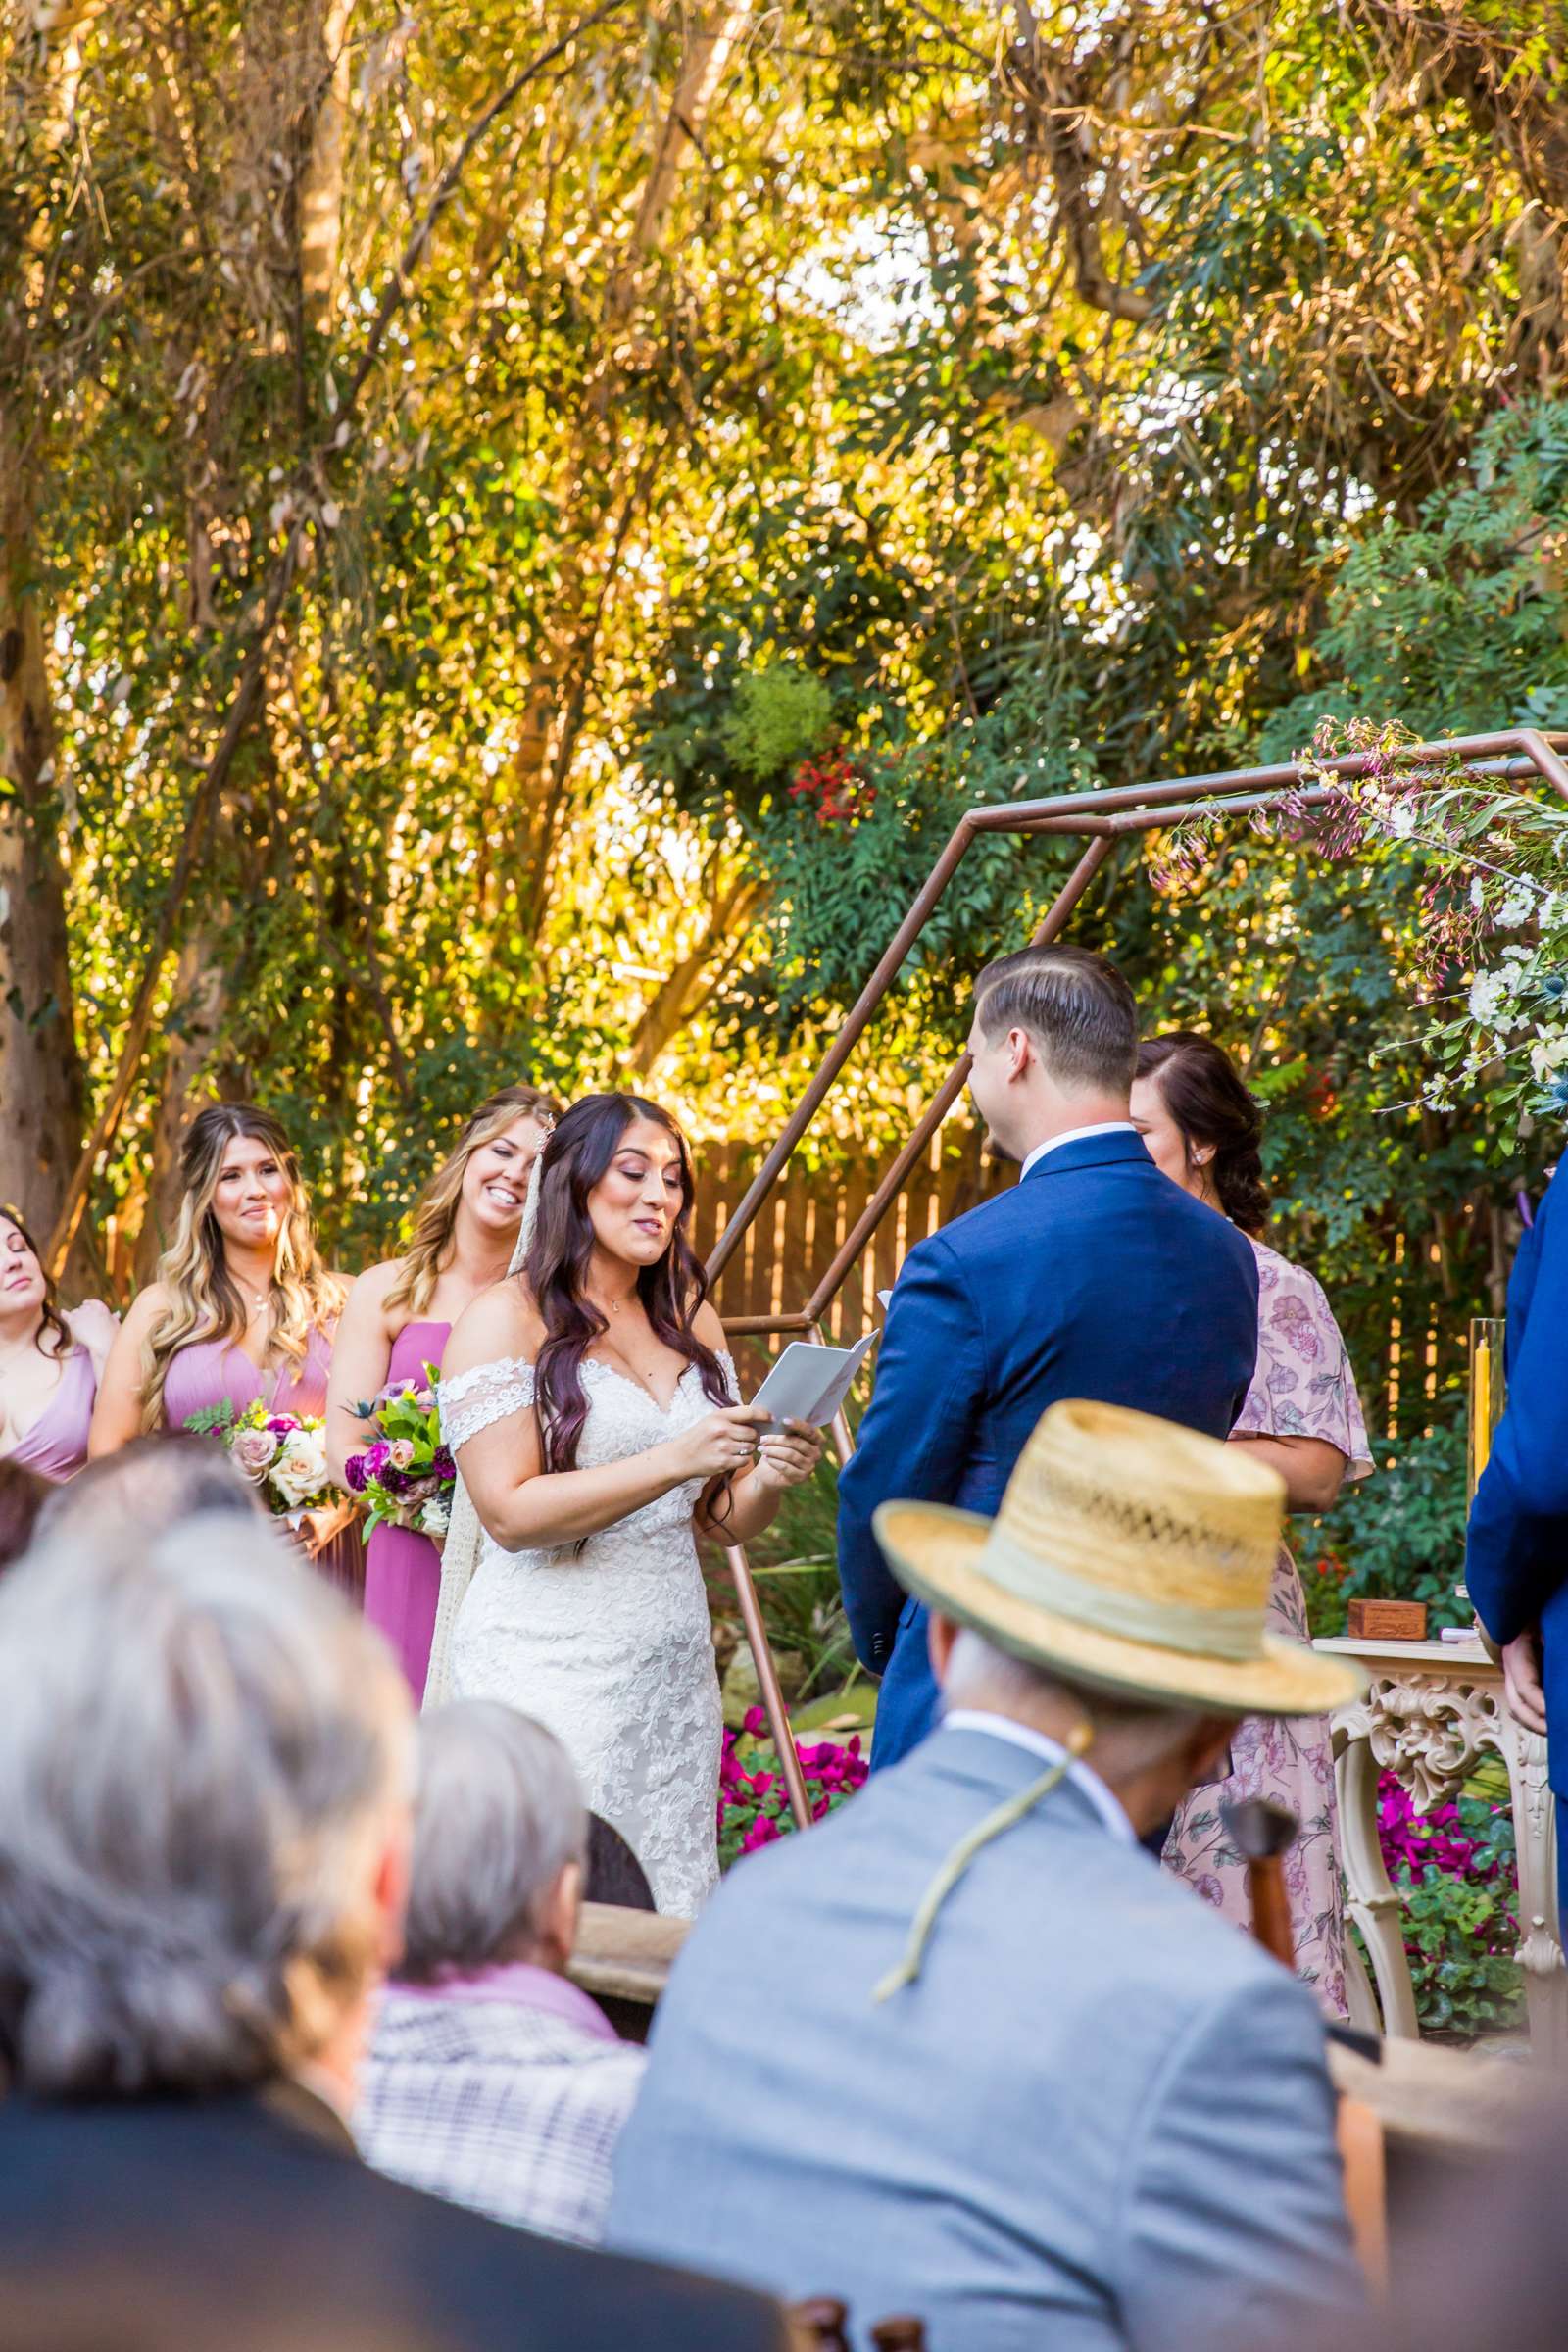 Twin Oaks House & Gardens Wedding Estate Wedding, Stephanie and Ilija Wedding Photo #73 by True Photography